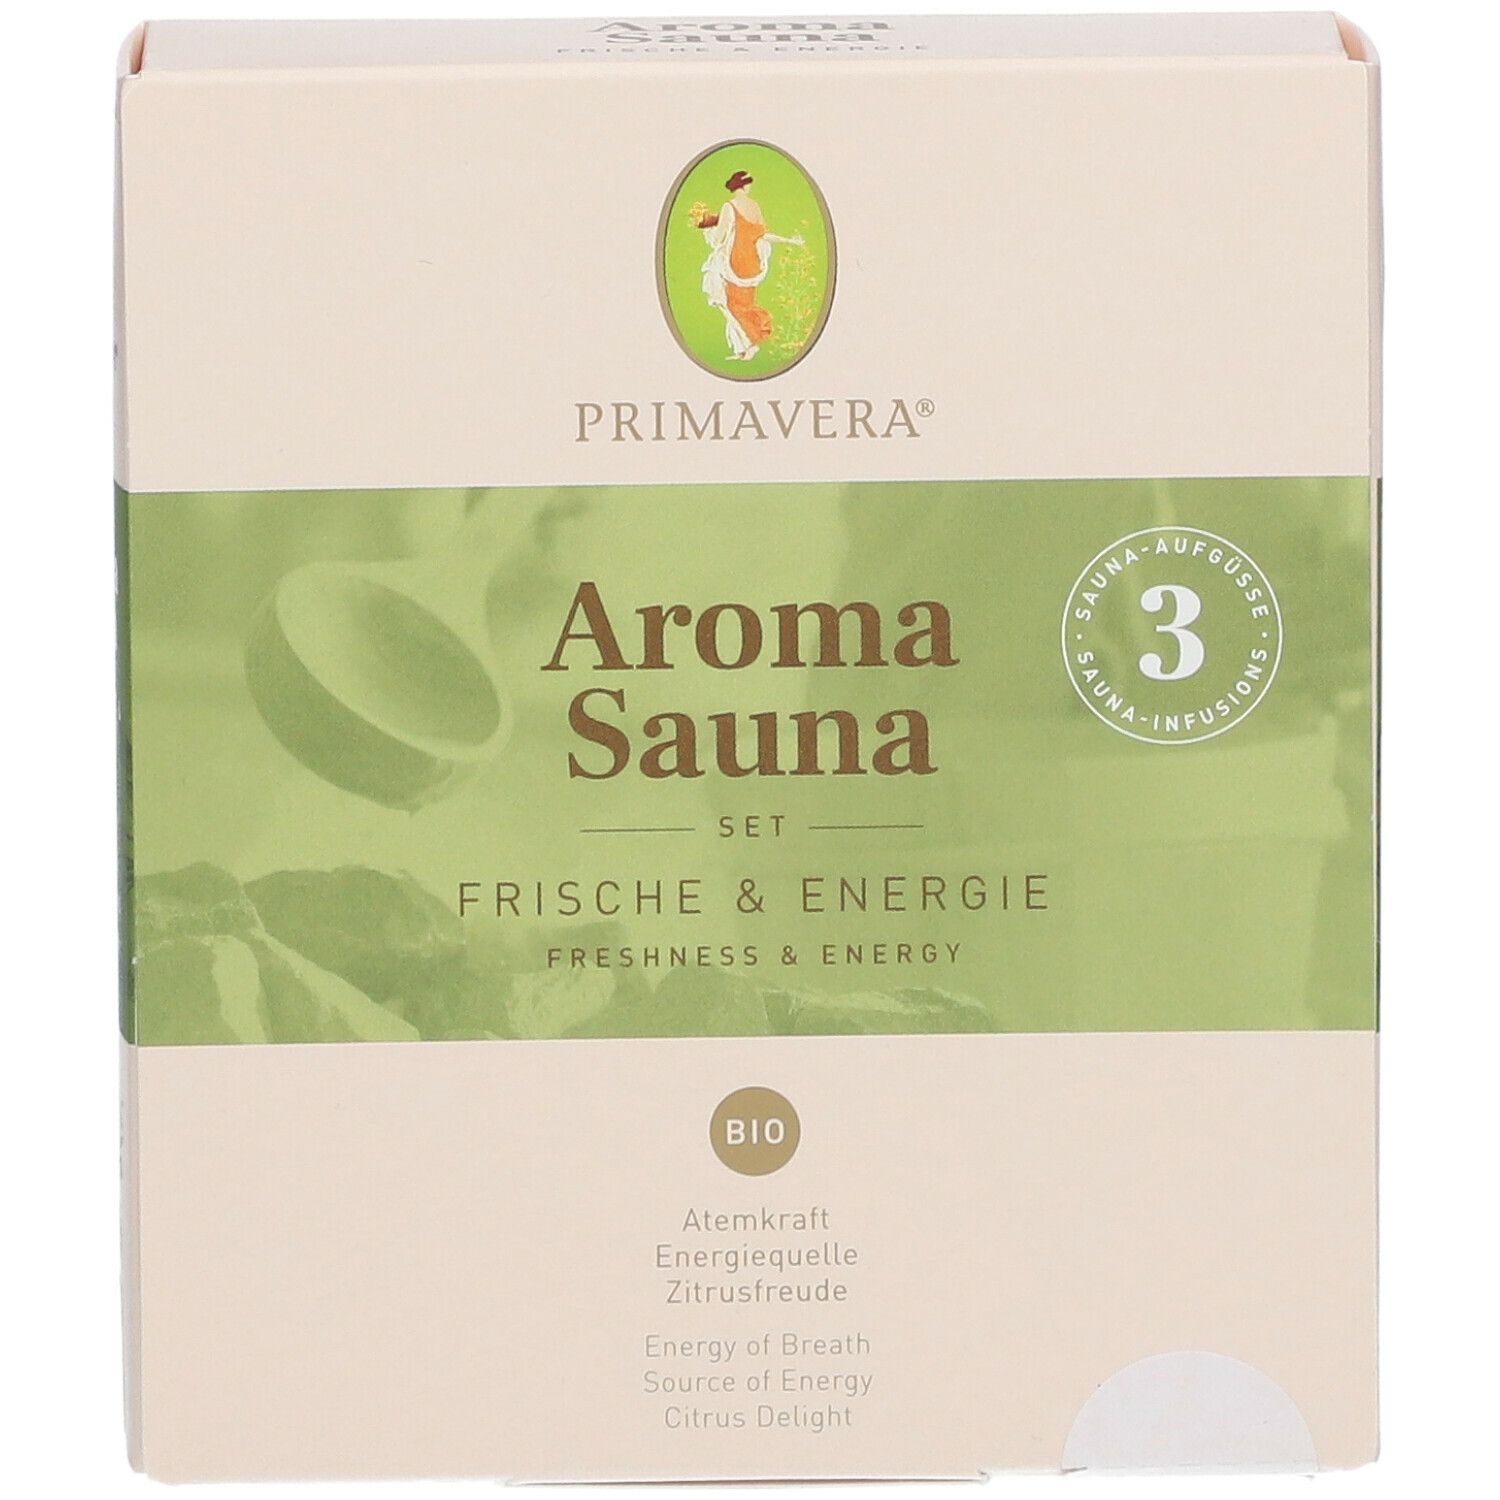 PRIMAVERA® Aroma Sauna SET FRISCHE & ENERGIE